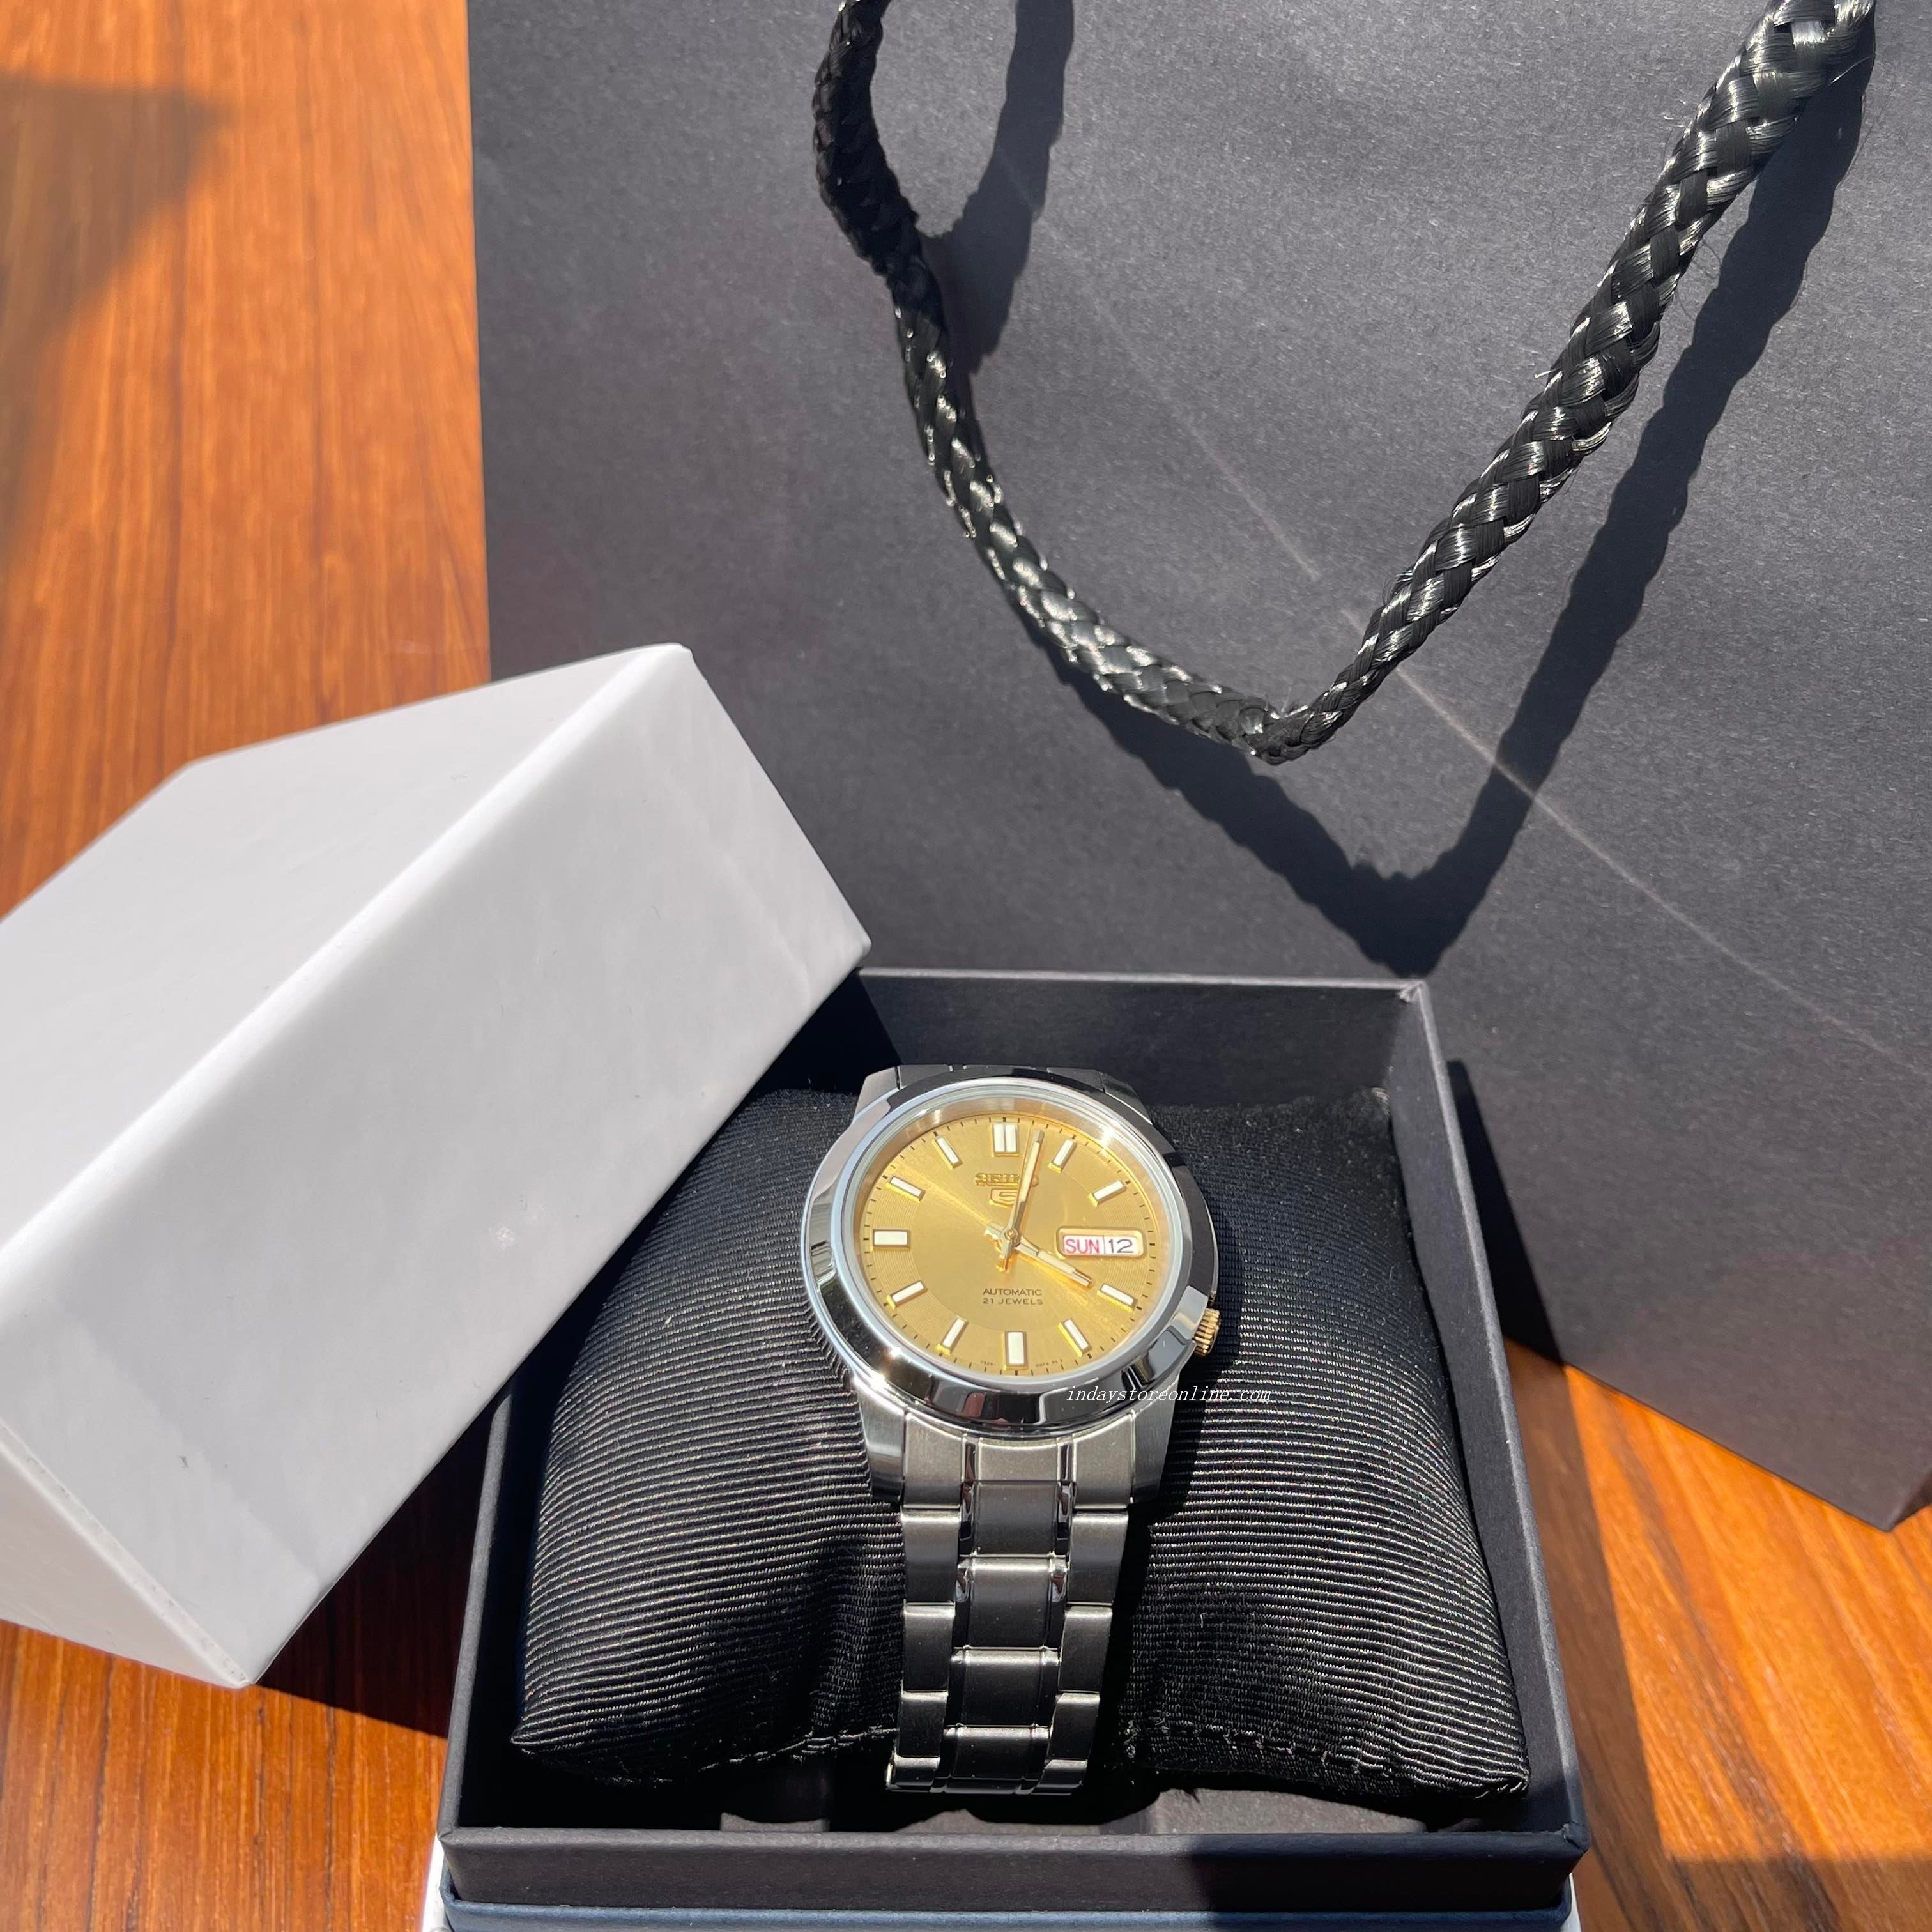 VINTAGE WOMENS SEIKO Retro Gold Plated Quartz Watch Pendant Necklace £0.99  - PicClick UK